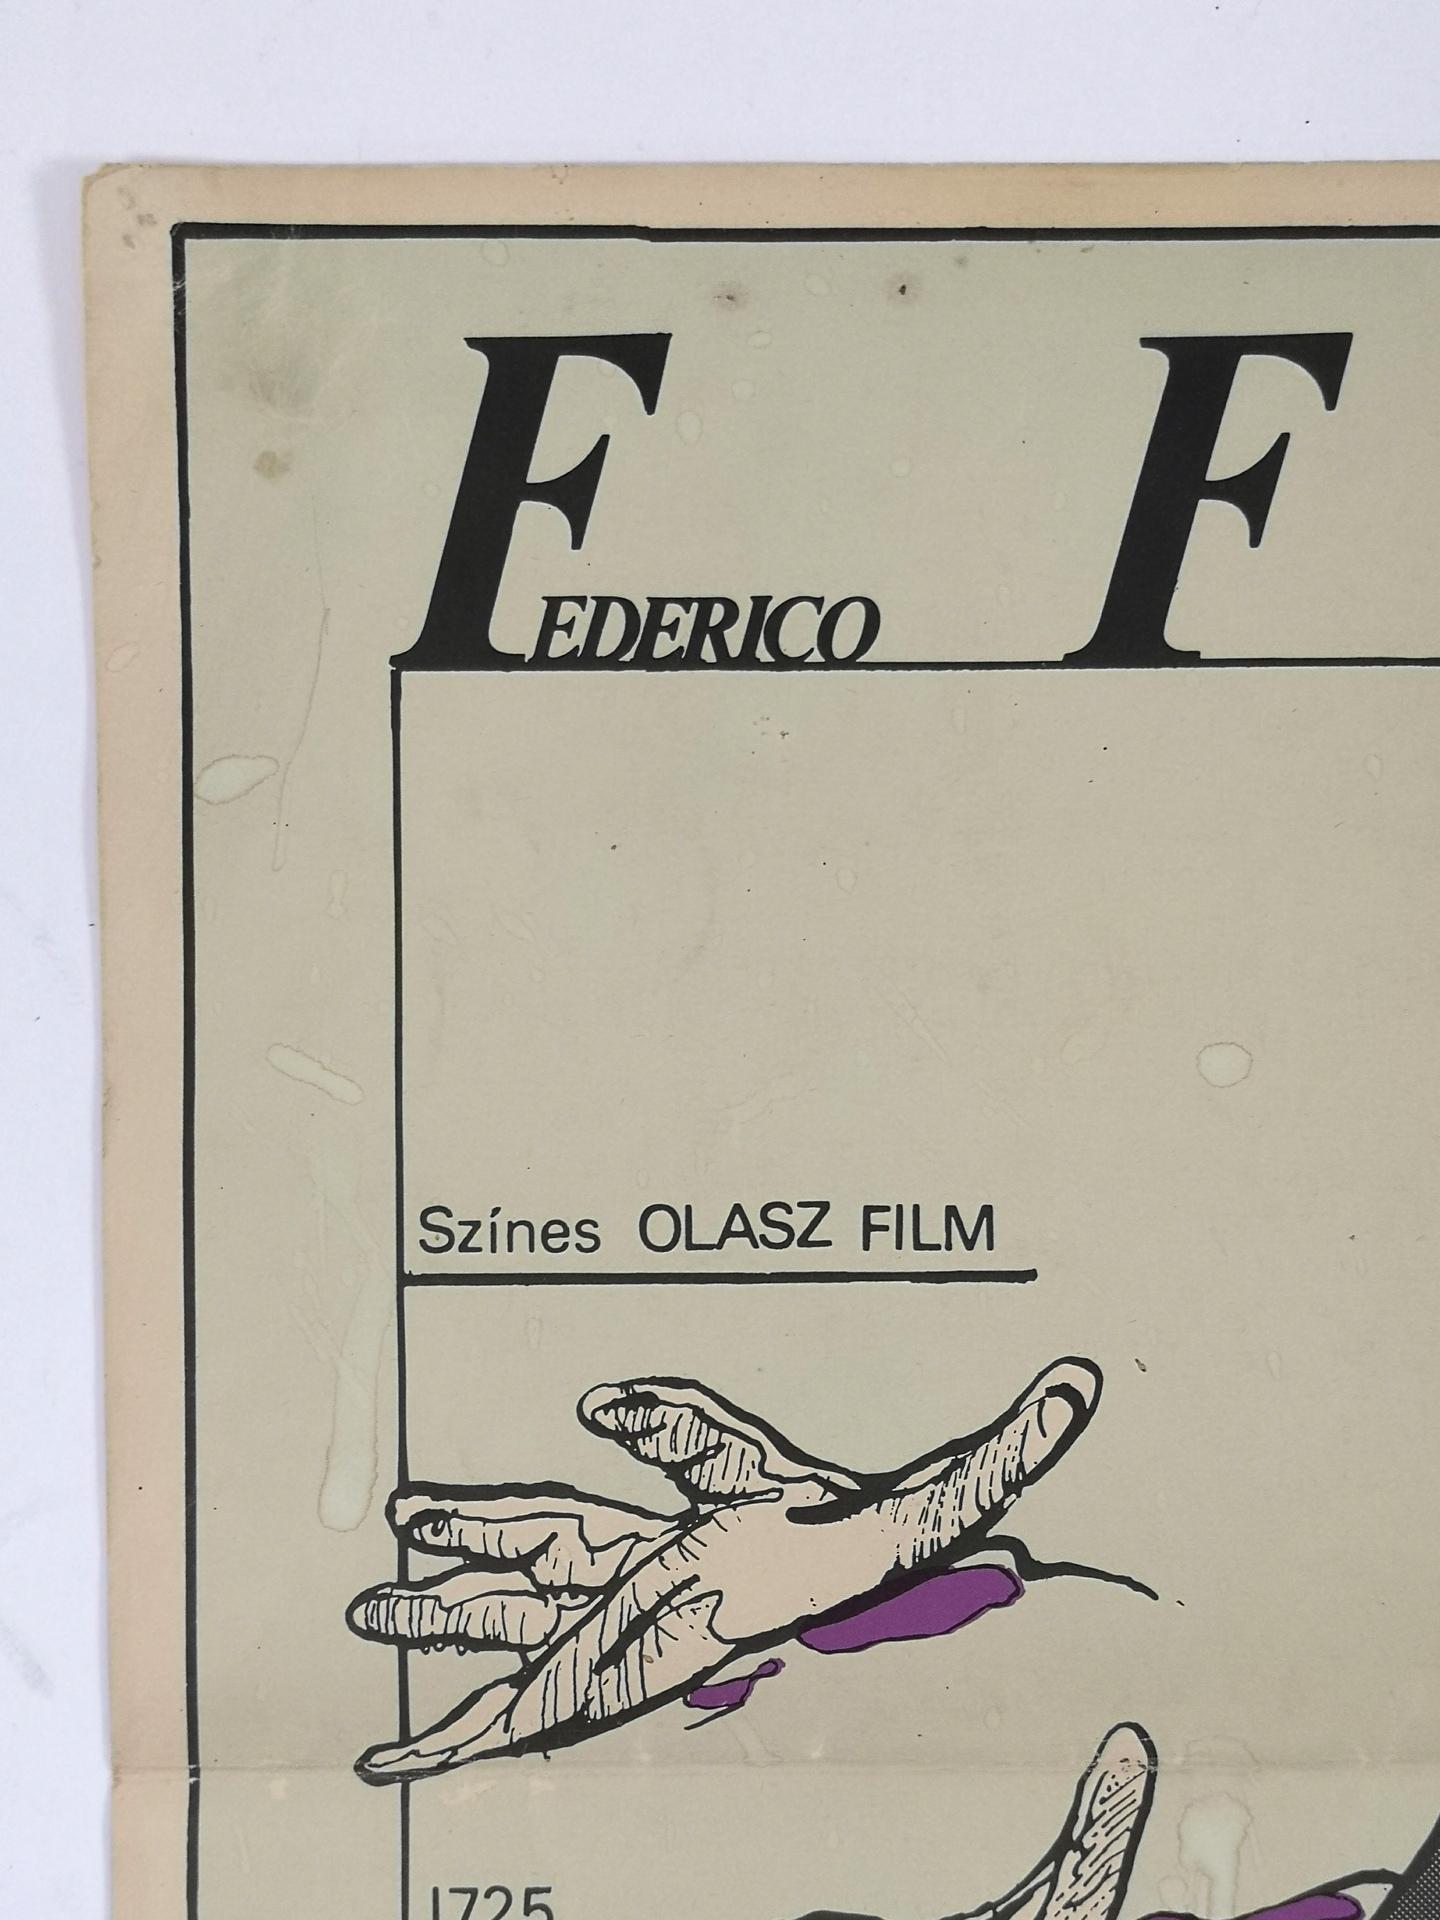 Rare Original 1979 Movie Poster for Casanova Di Federico Fellini 5